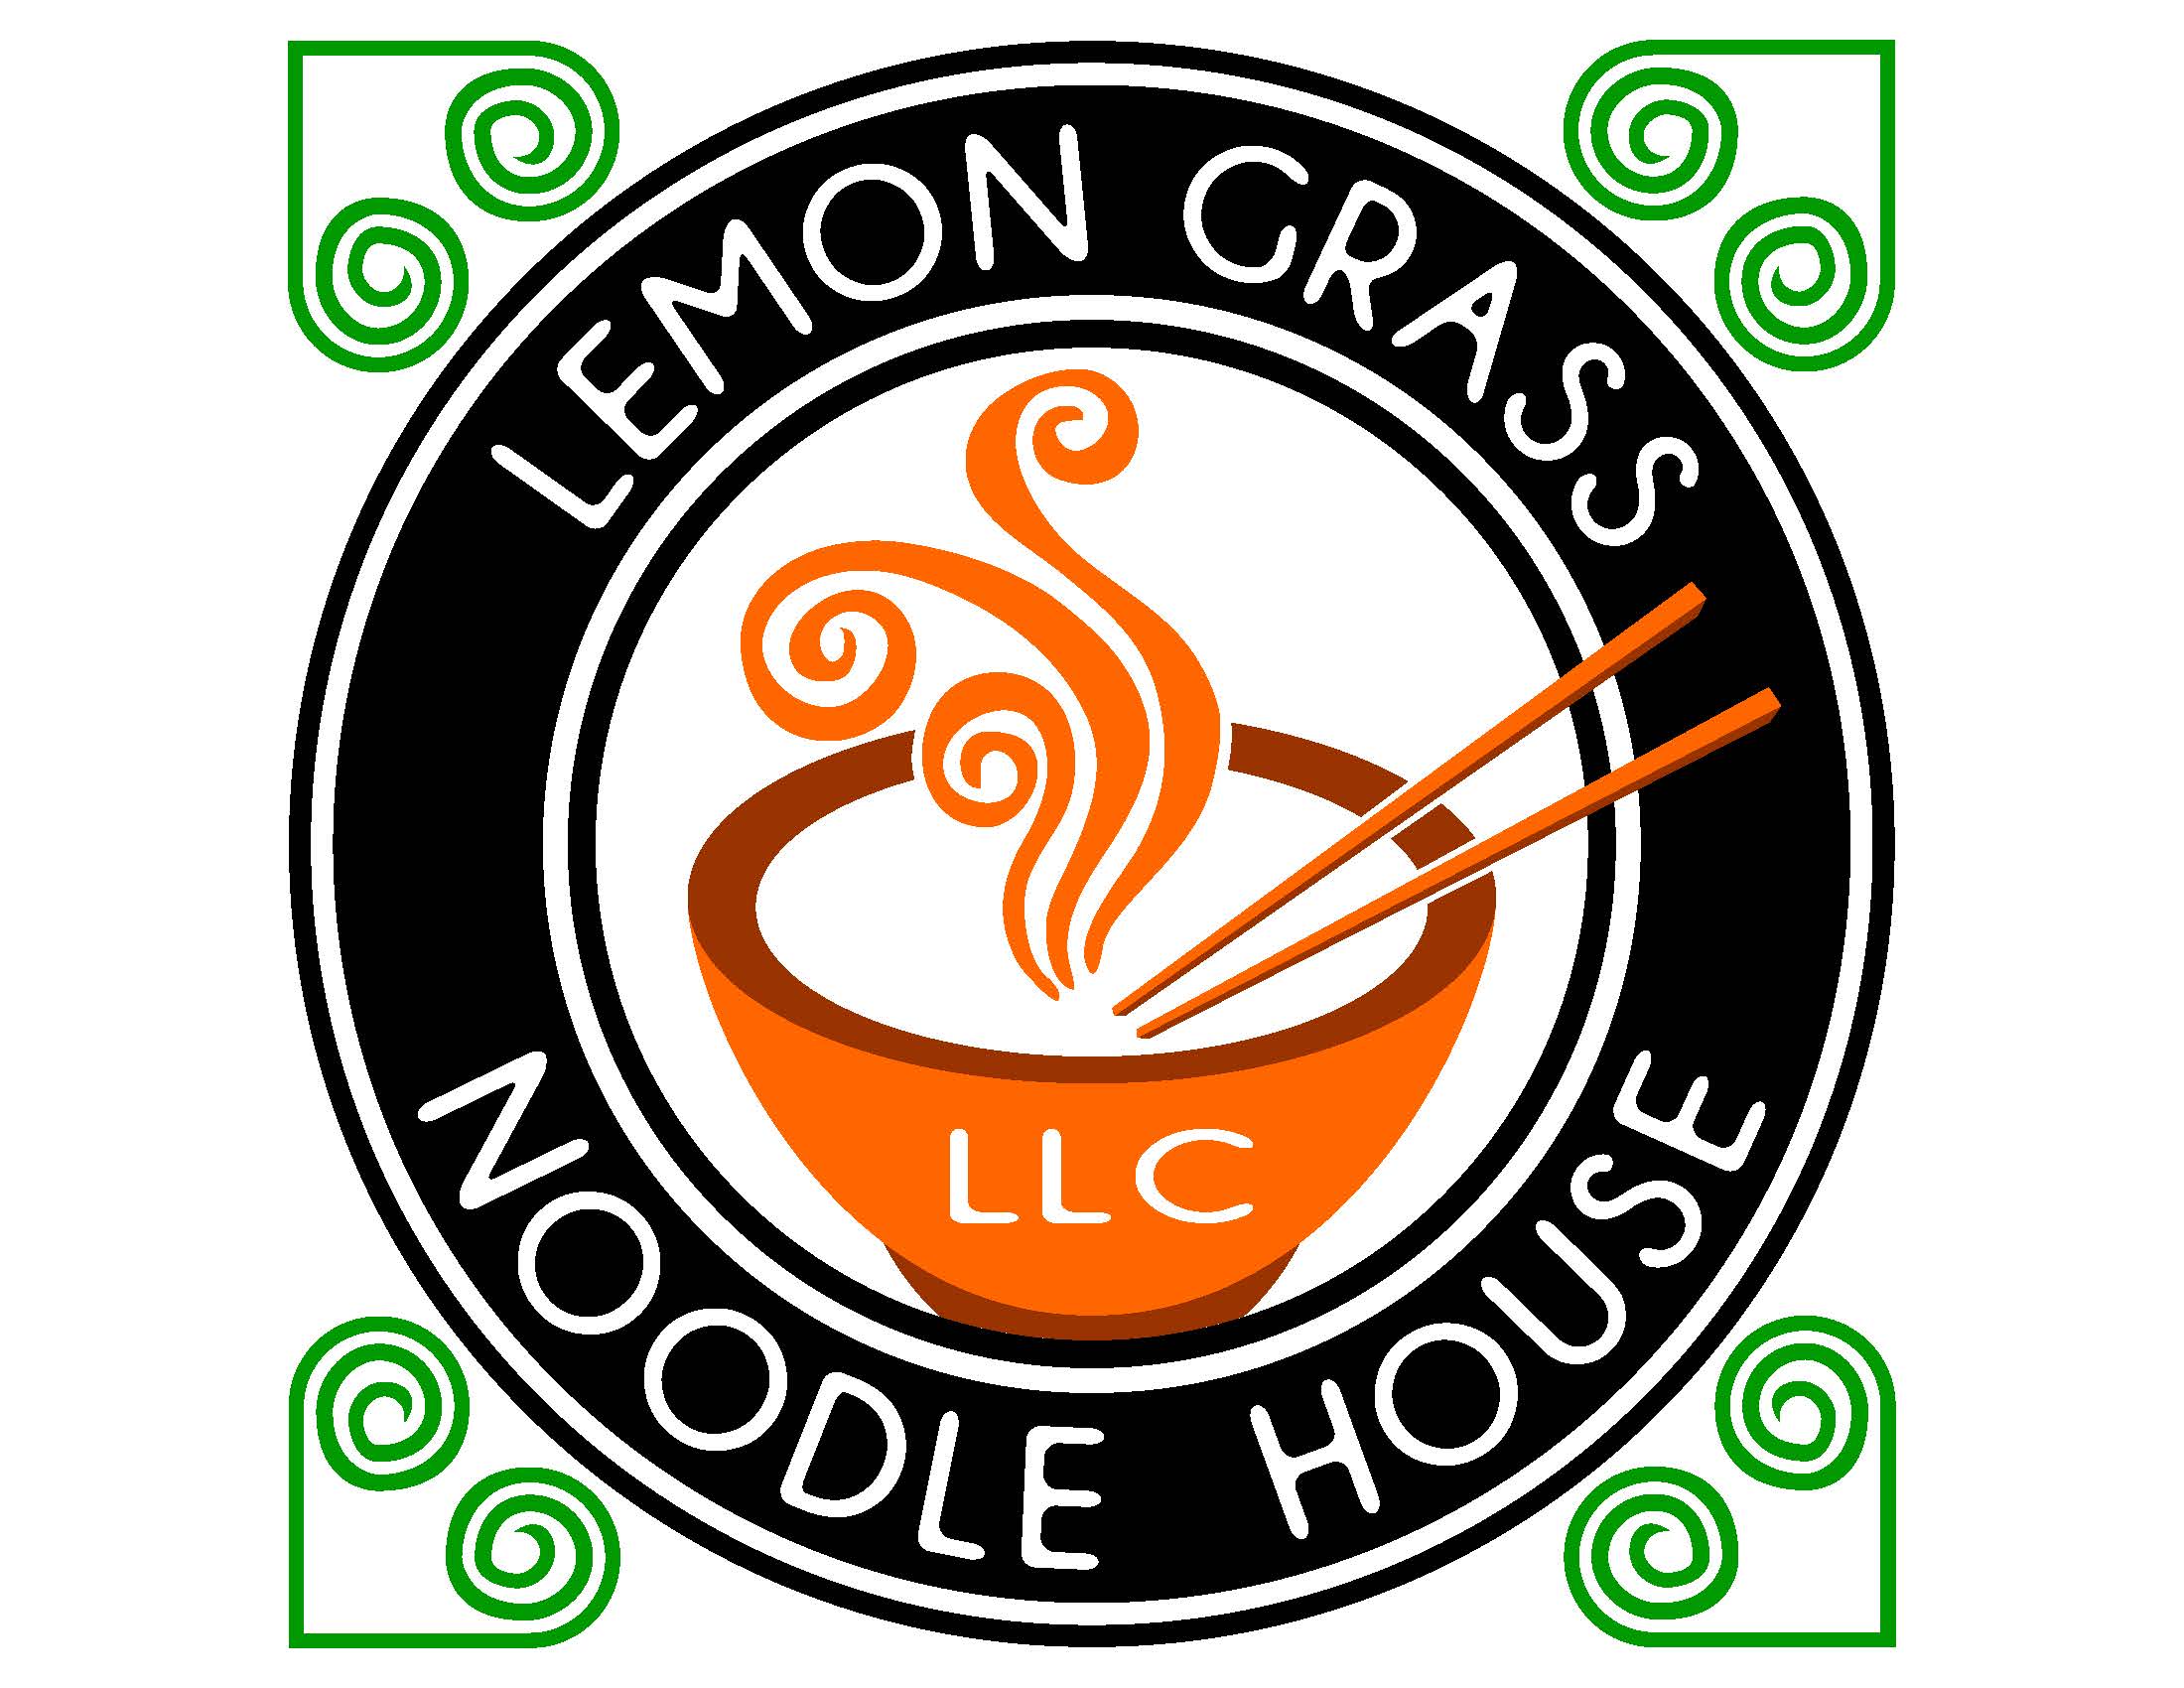 Lemon Grass Noodle House